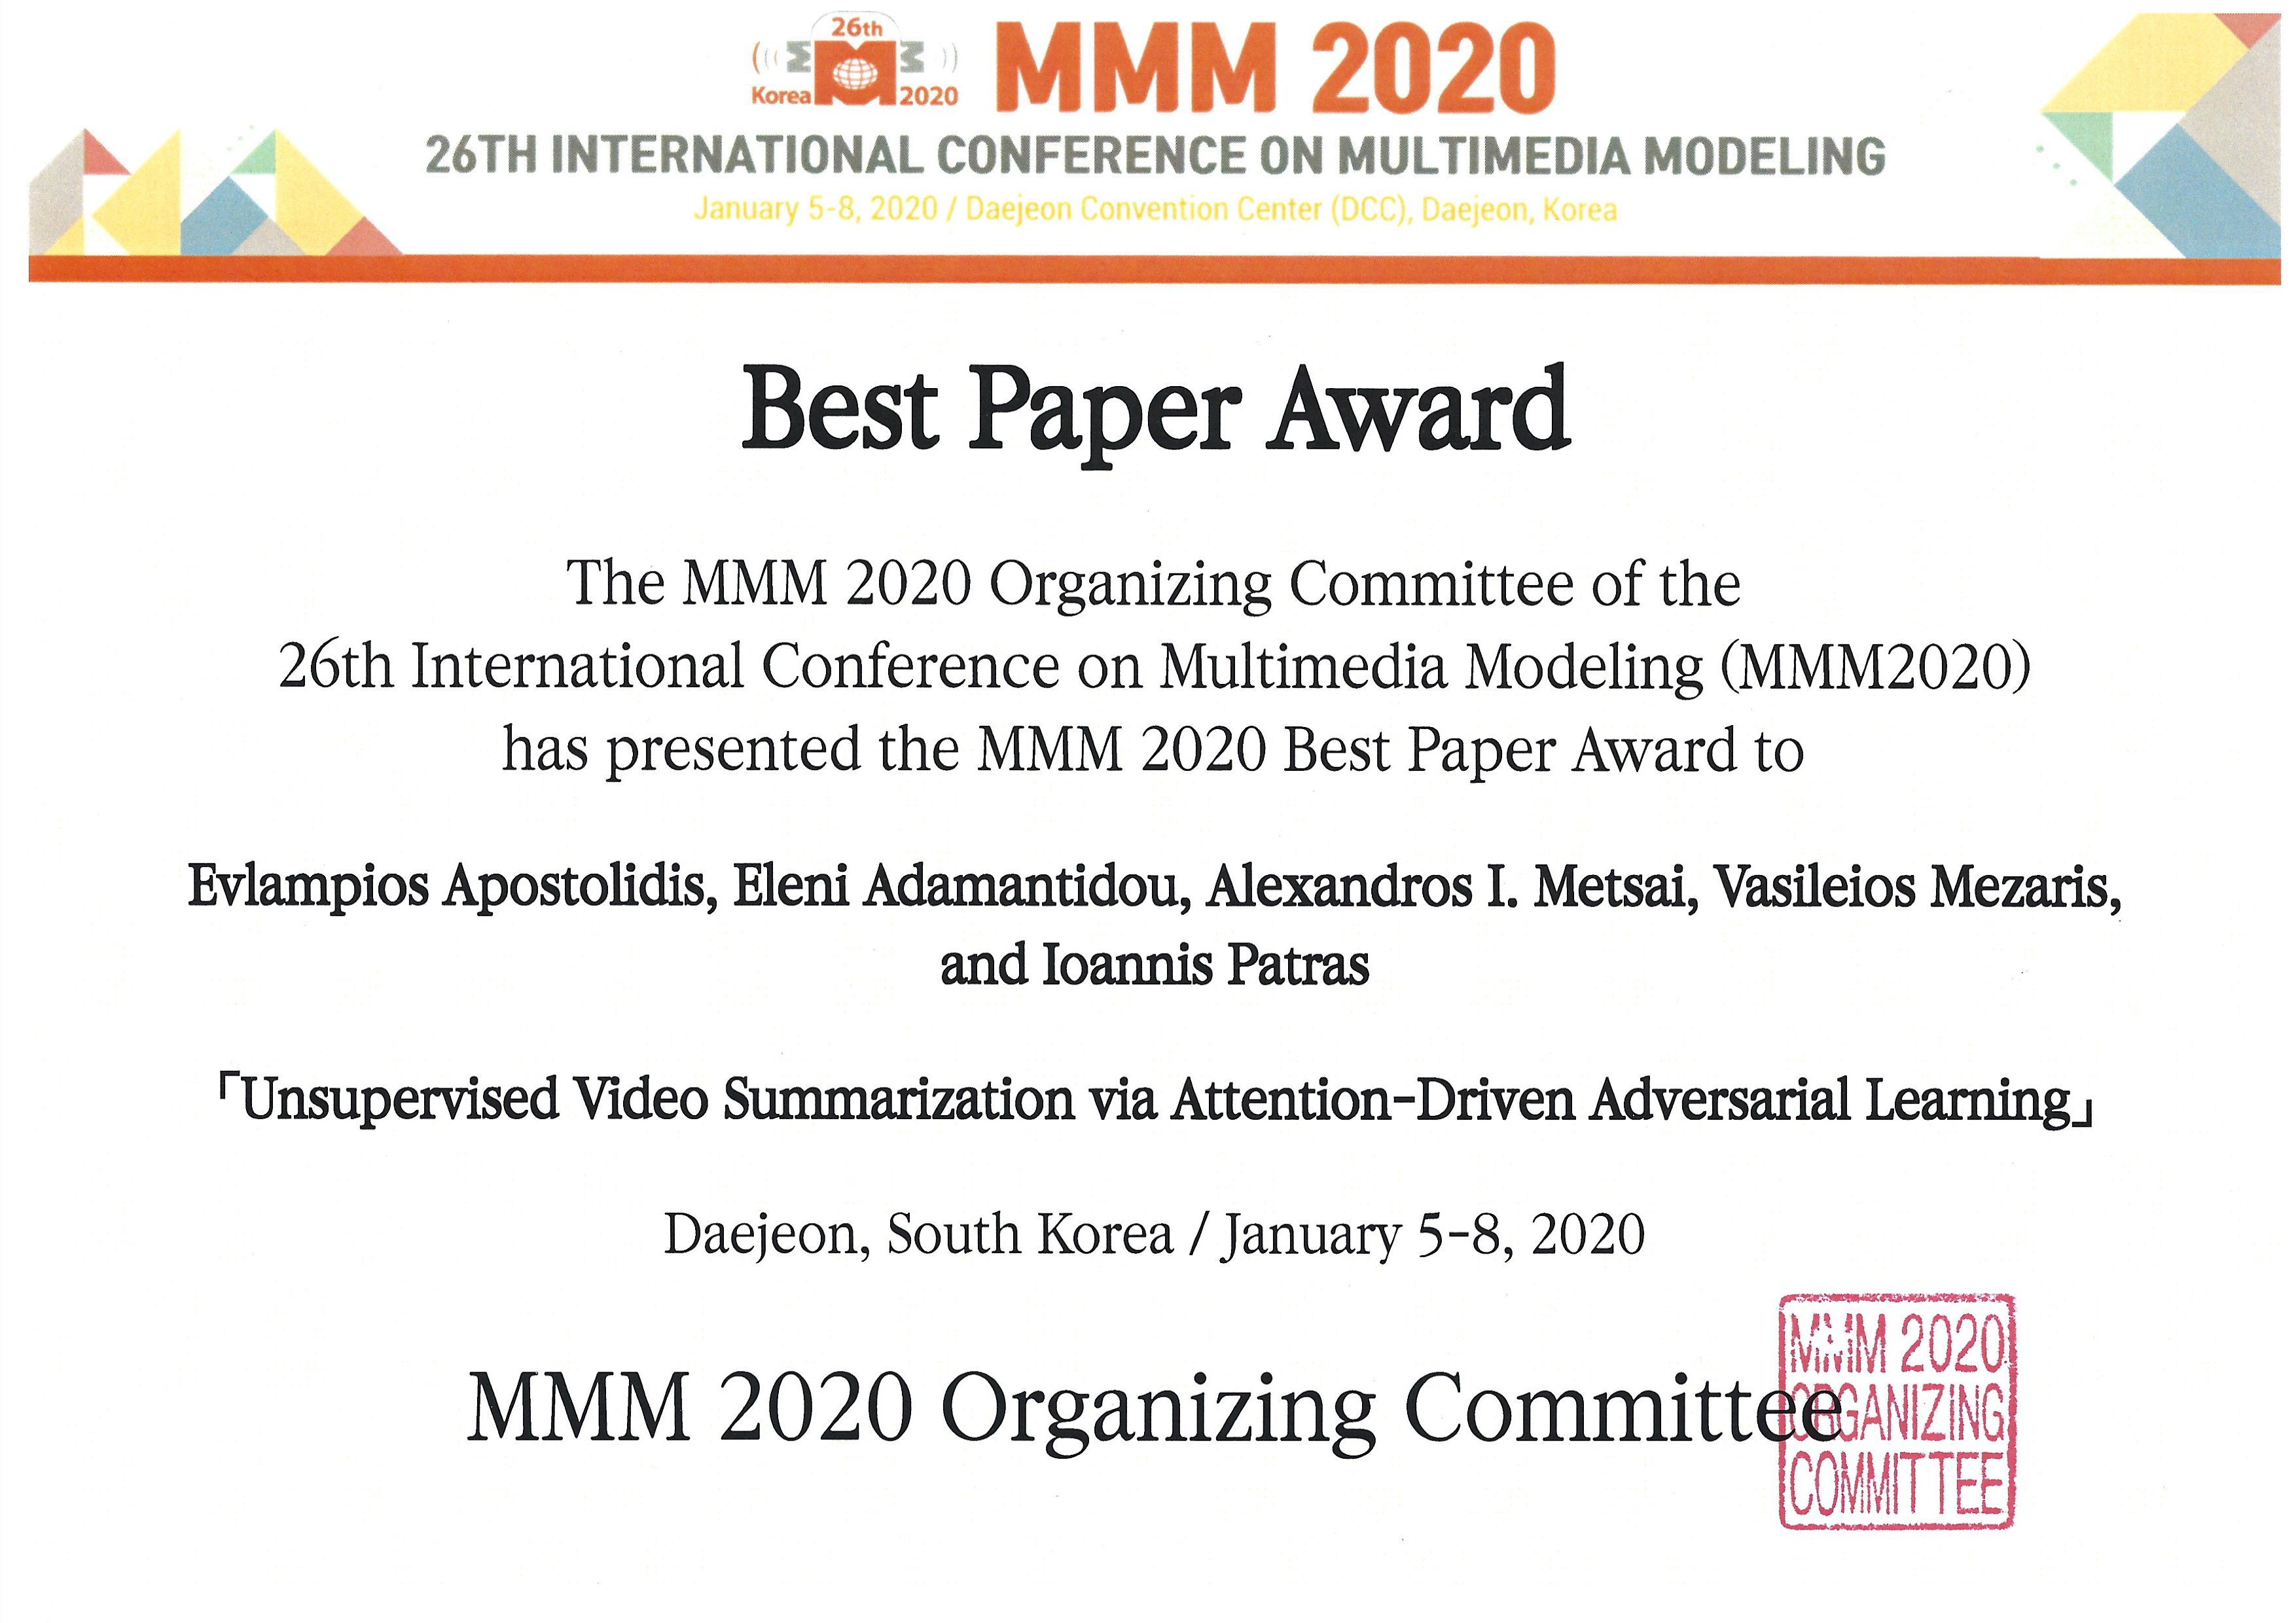 ITI/CERTH receives MMM2020 Best Paper Award 